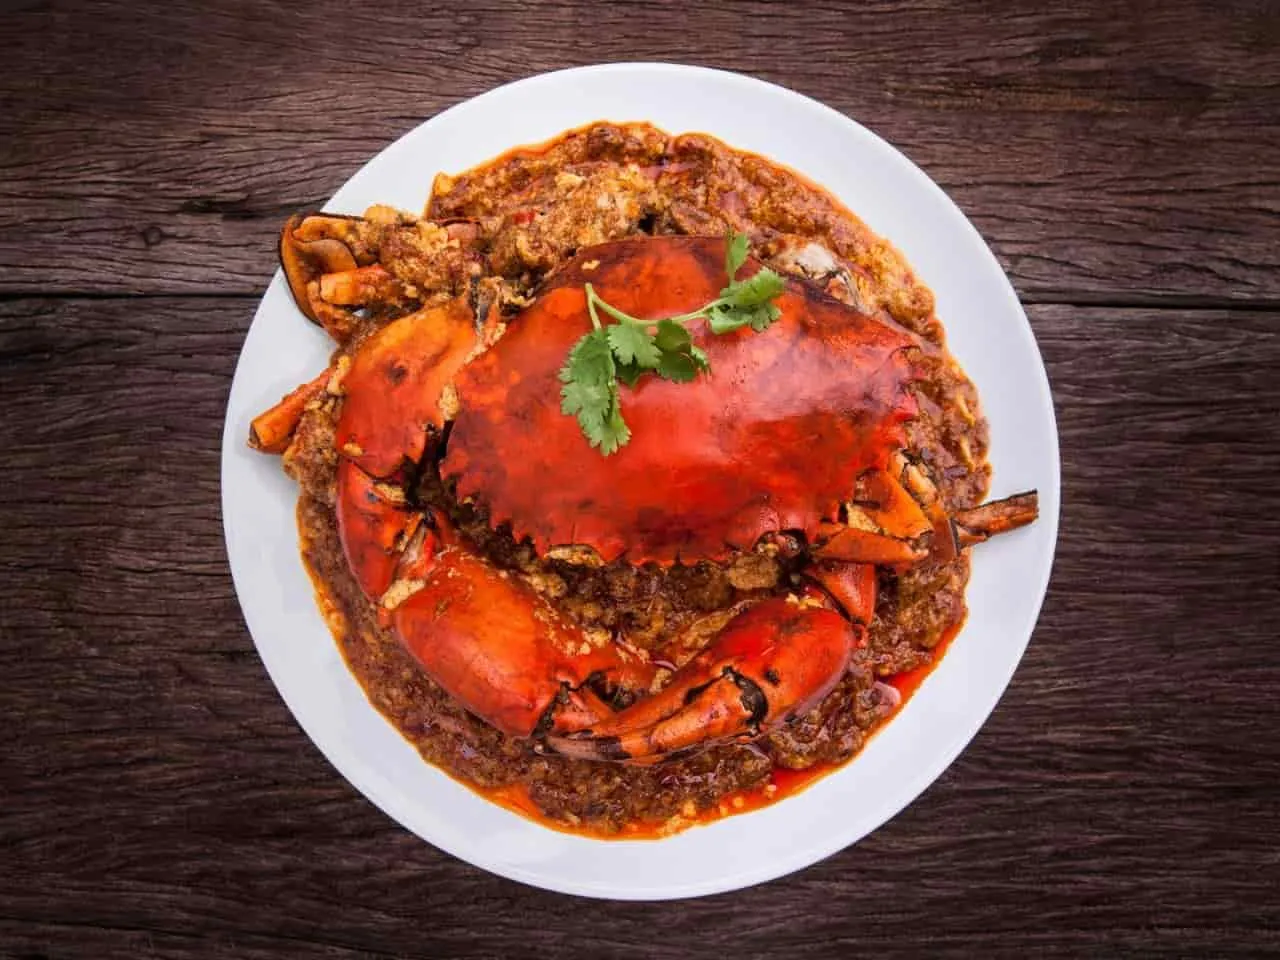 Cua oi cay Chili crab - khoản đặc sản nổi tiếng phổ biến của Singapore